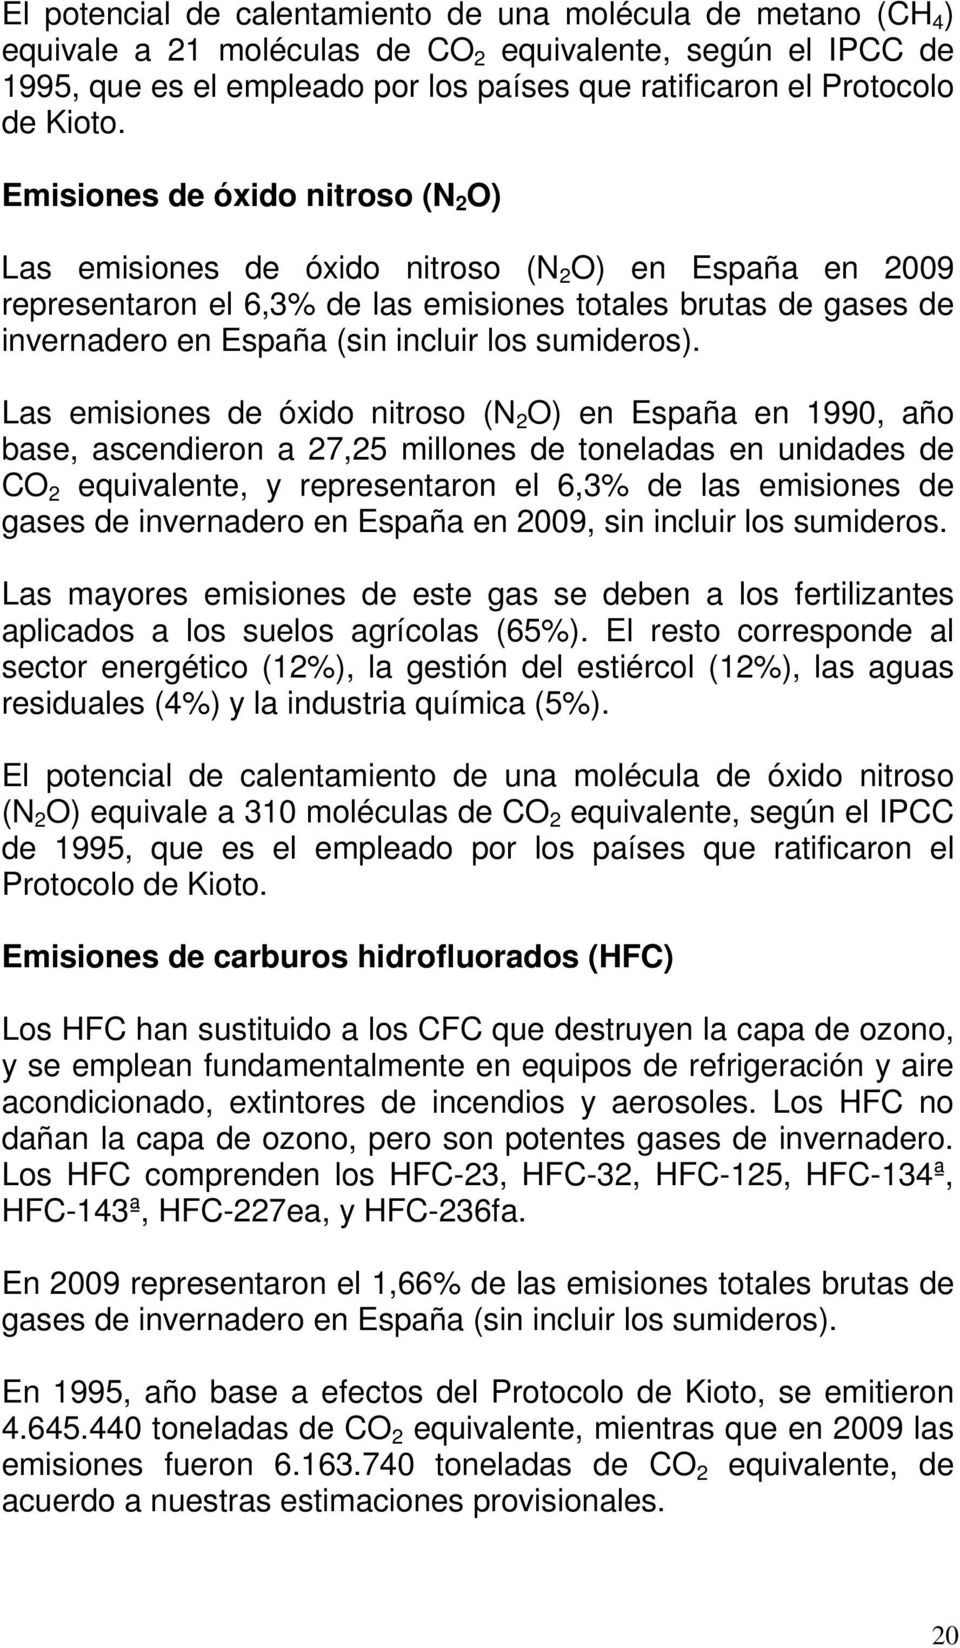 Emisiones de óxido nitroso (N 2 O) Las emisiones de óxido nitroso (N 2 O) en España en 2009 representaron el 6,3% de las emisiones totales brutas de gases de invernadero en España (sin incluir los